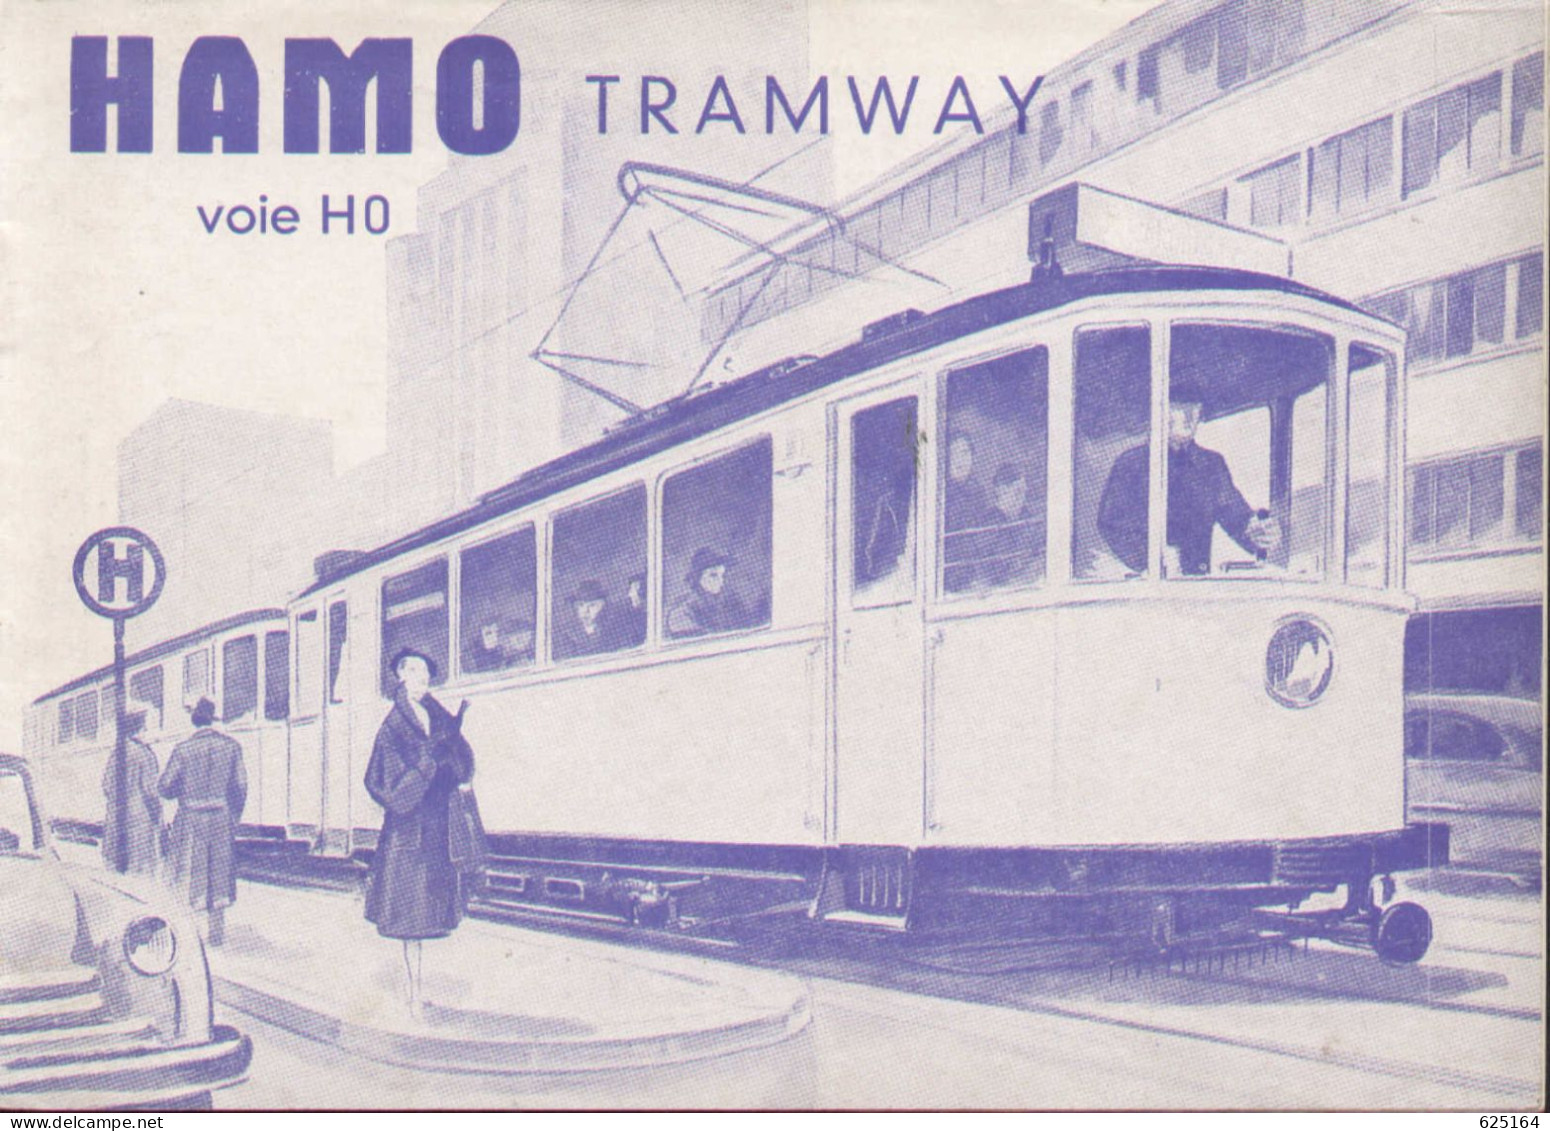 Catalogue HAMO TRAMWAY 1954 Voie HO 1:87 Französische Ausgabe - Frans